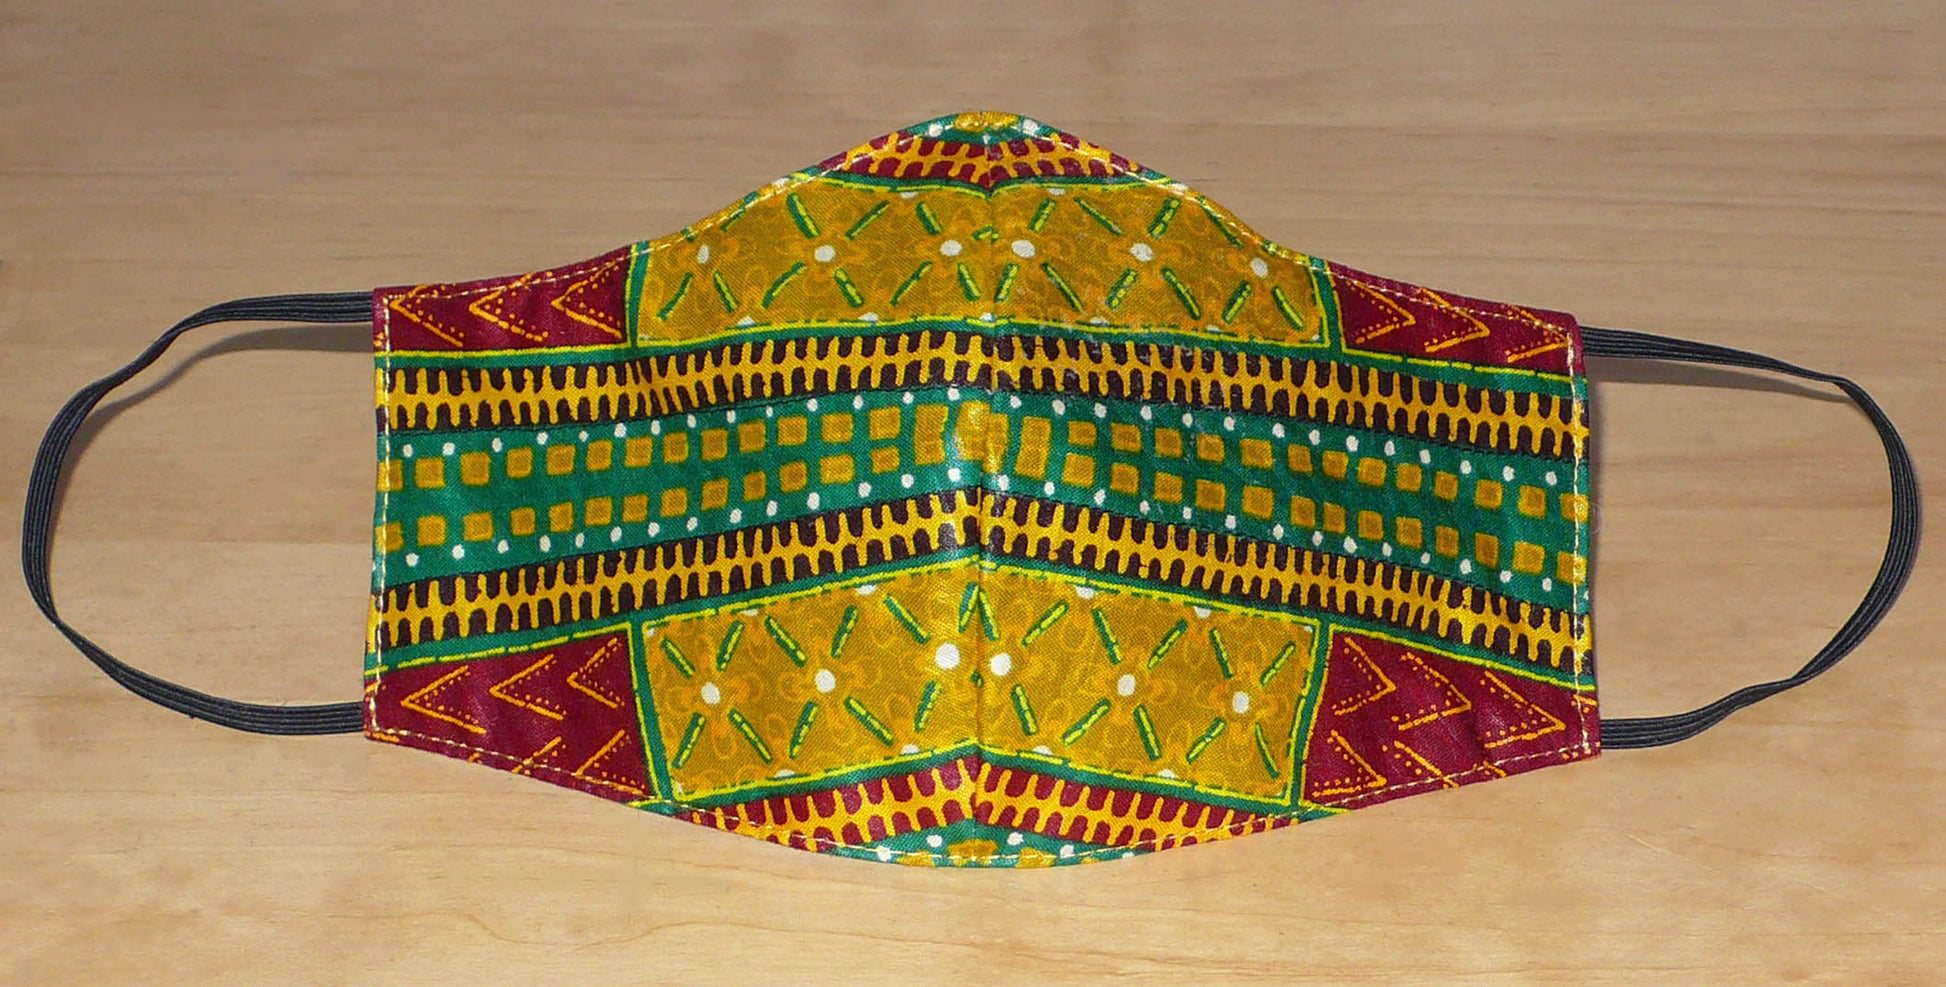 Masque de protection coupé et cousu dans un tissu en coton à motifs africains lavable et réutilisable. Il se porte avec des élastiques.